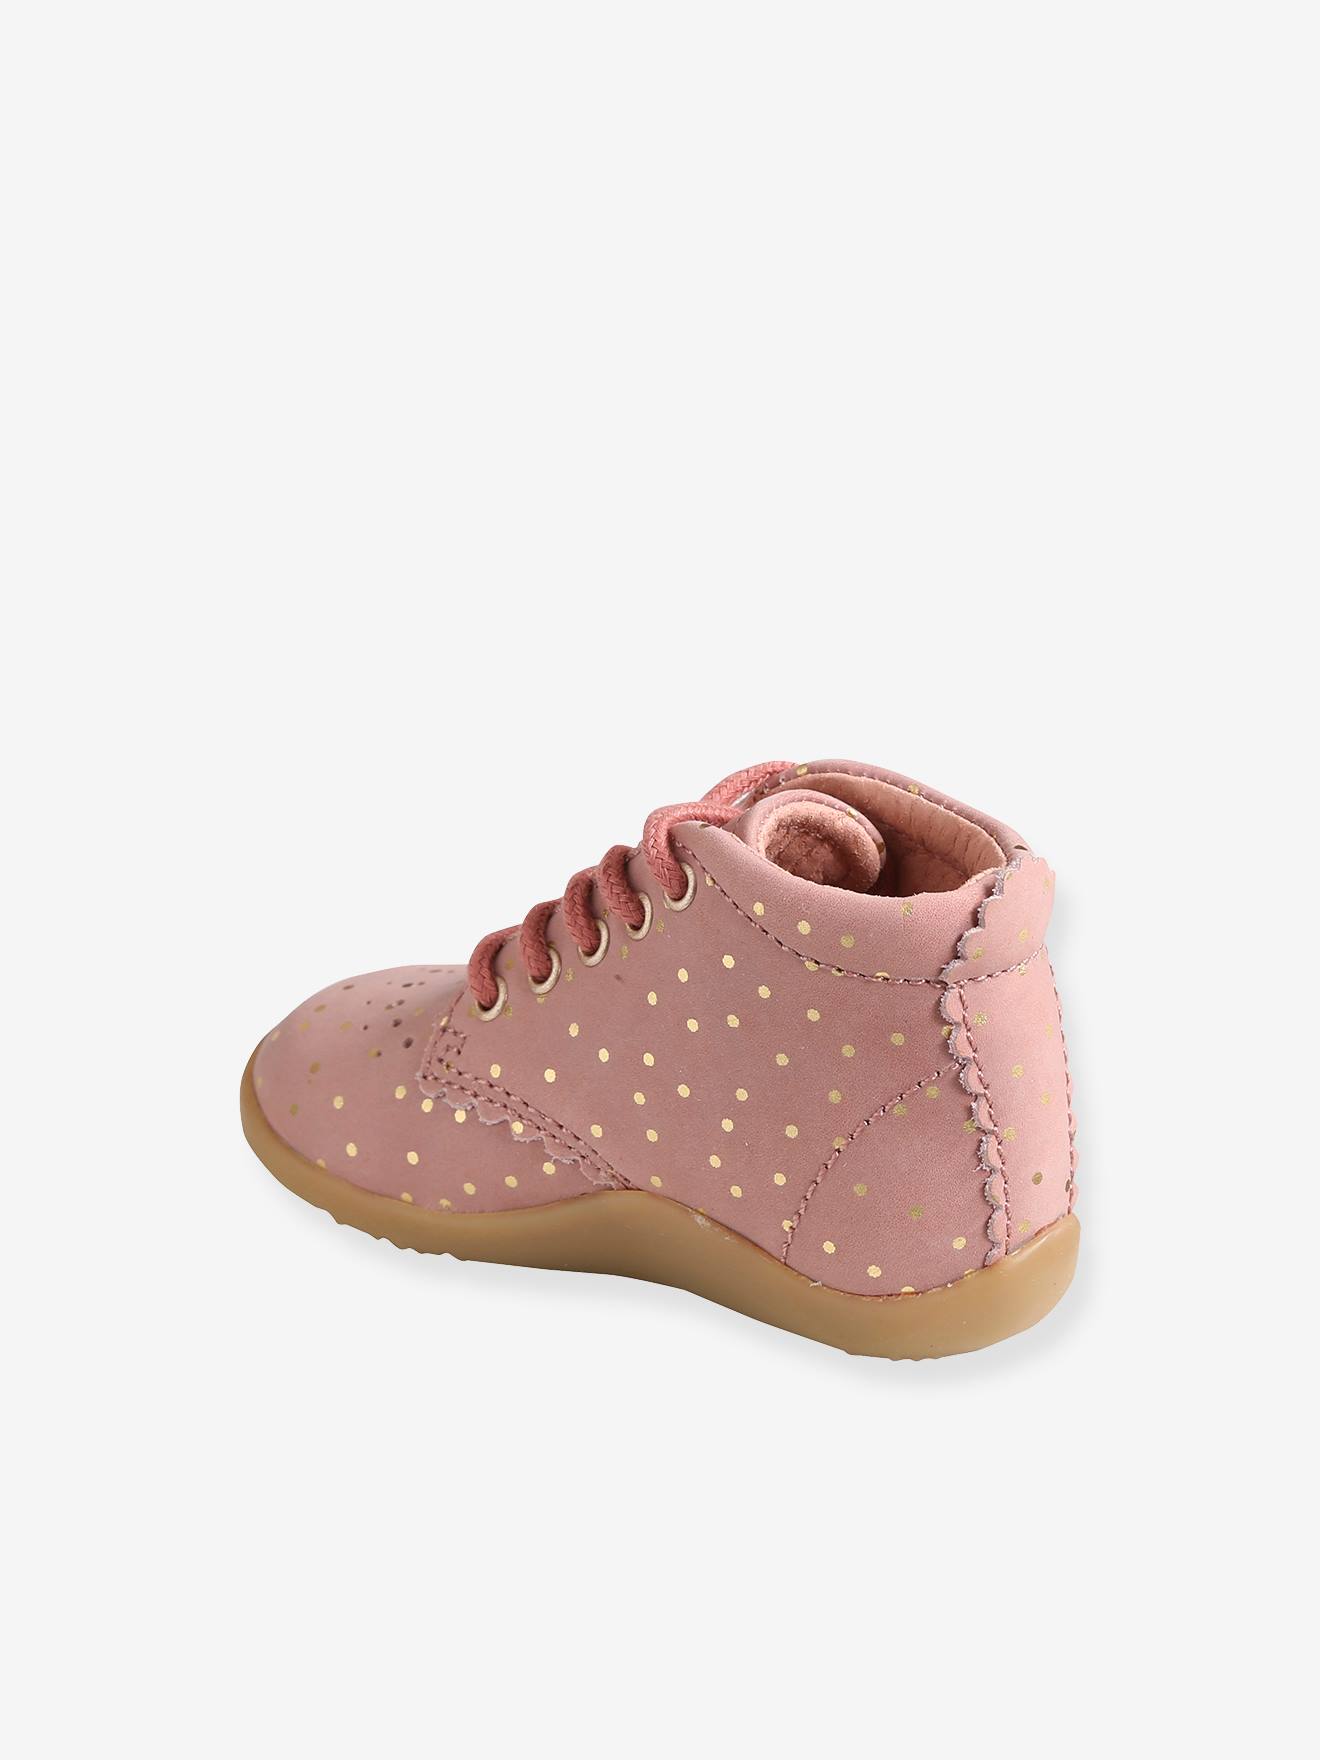 Nouveau Bébé Fille Noir NEXT Bottes Baskets Chaussures Taille 3 4 5 infant